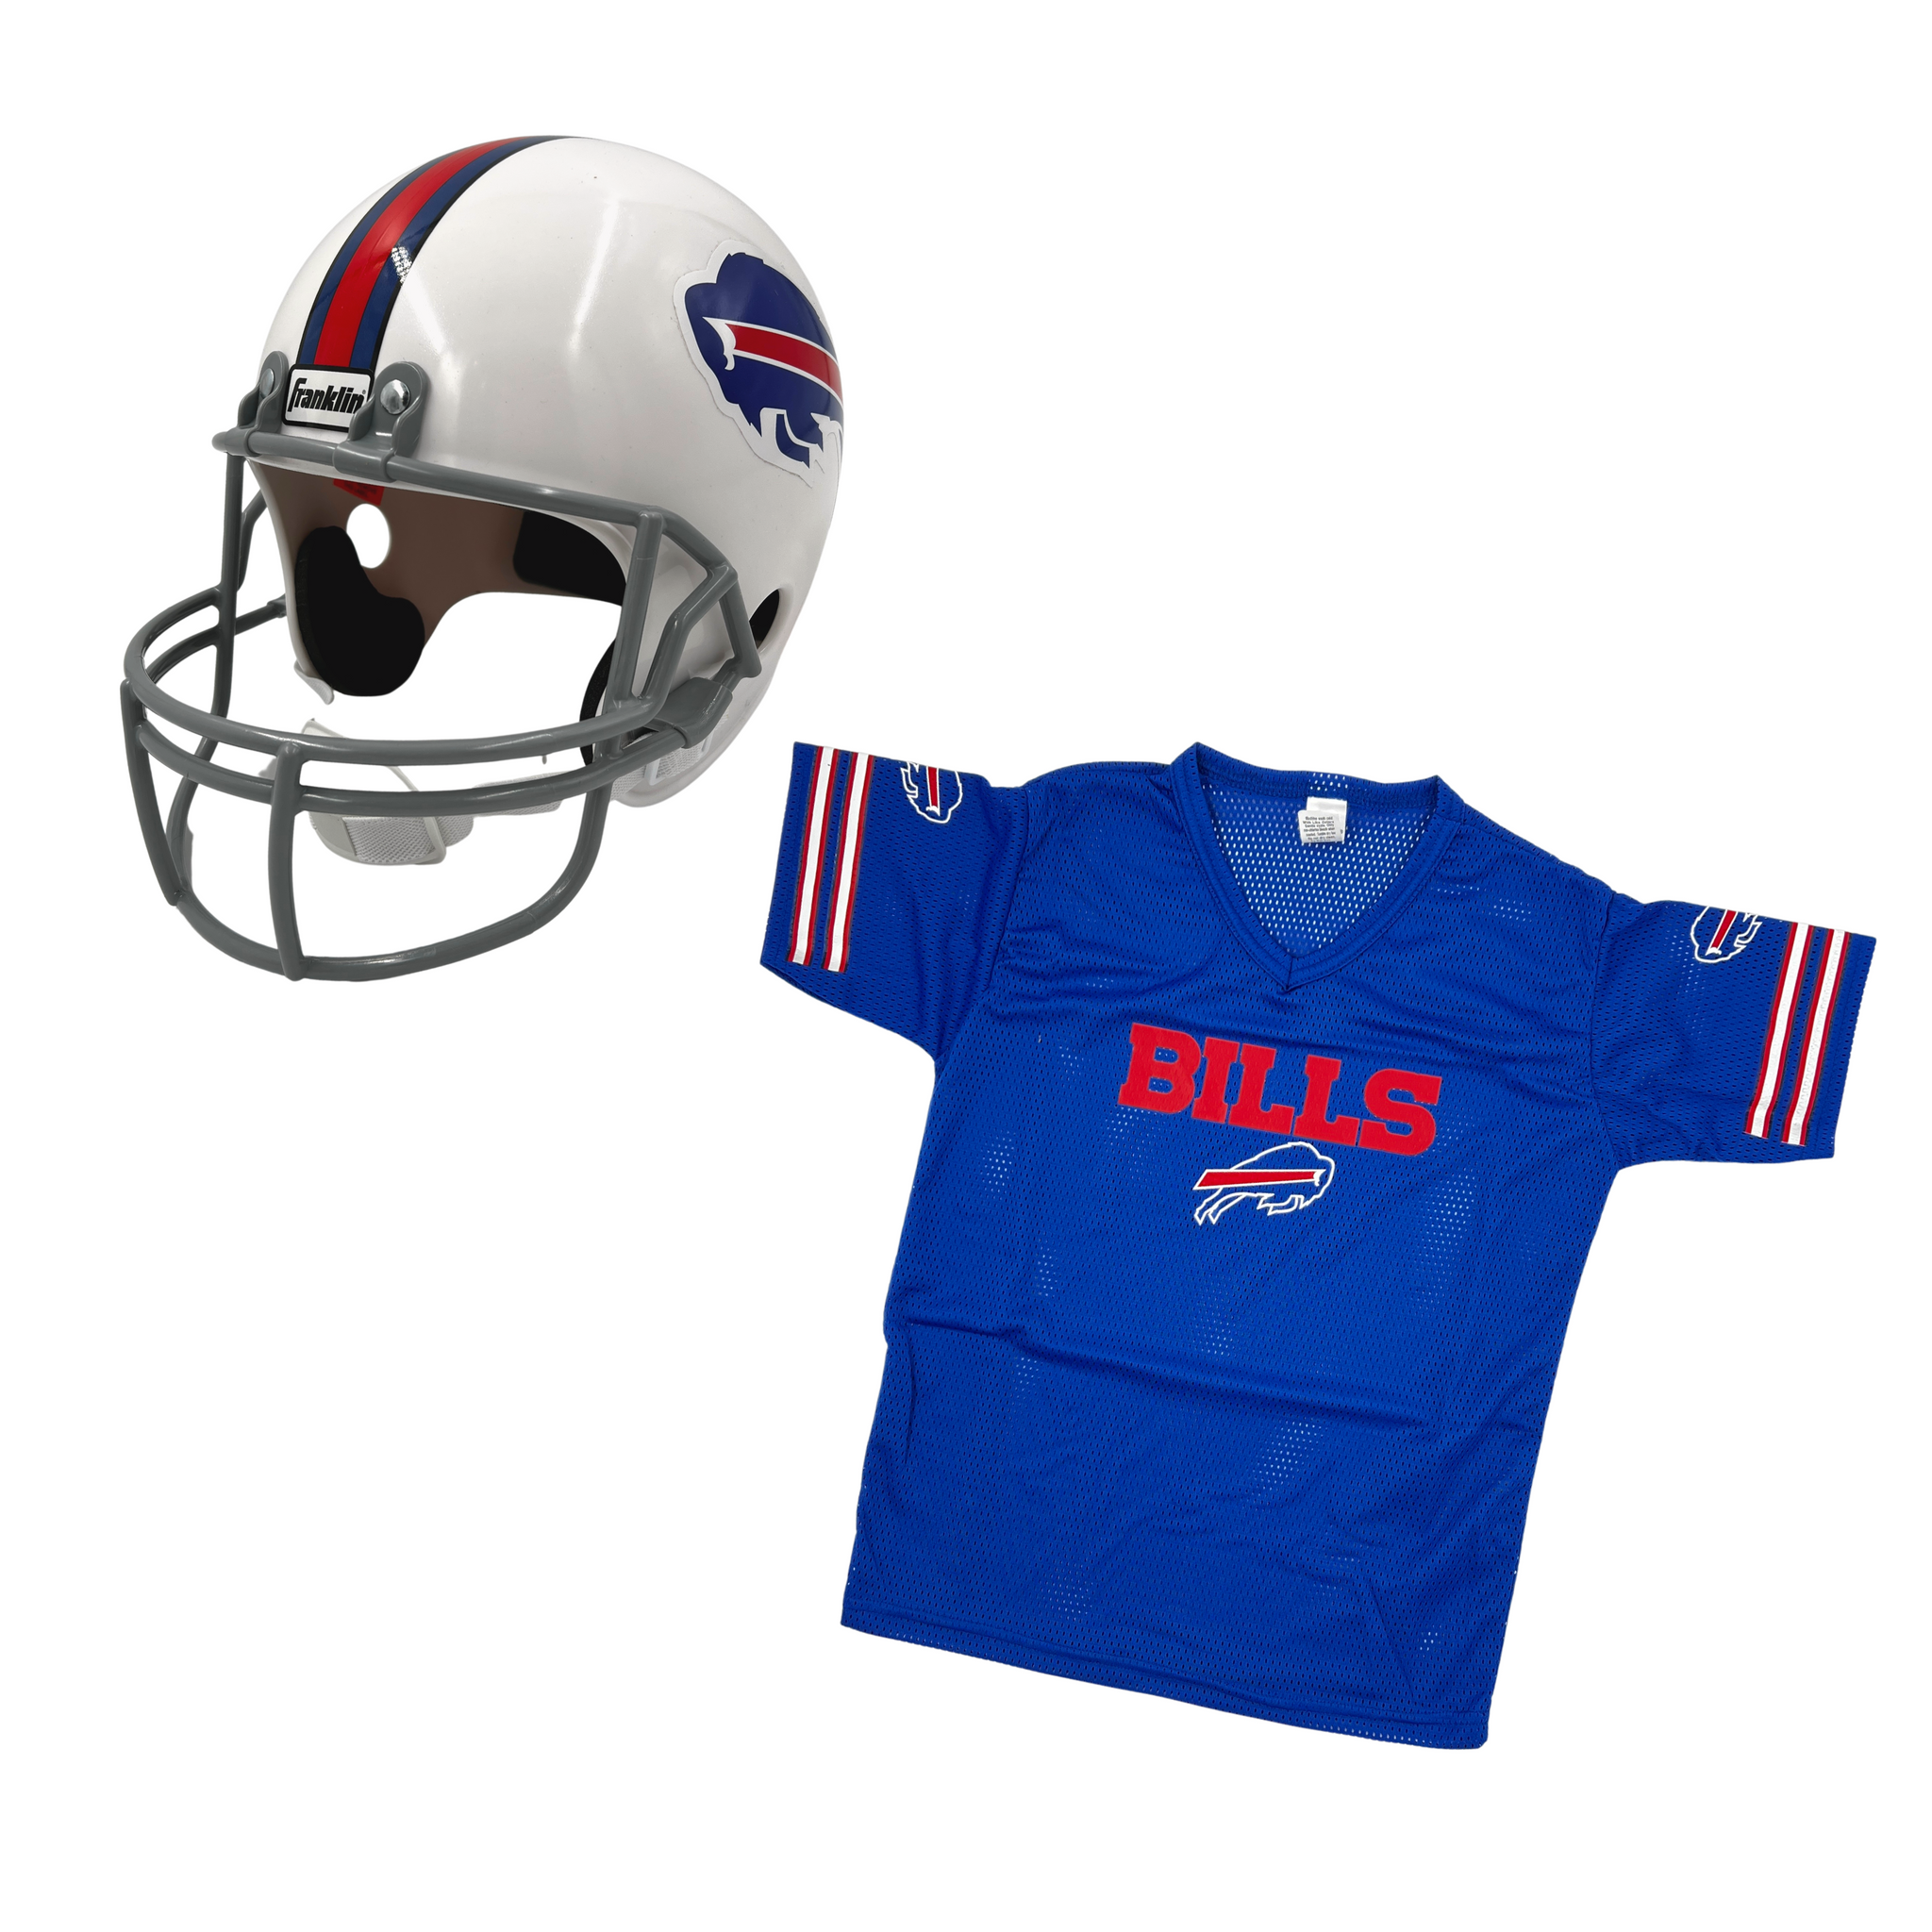 NFL Buffalo Bills Youth Uniform Jersey Set